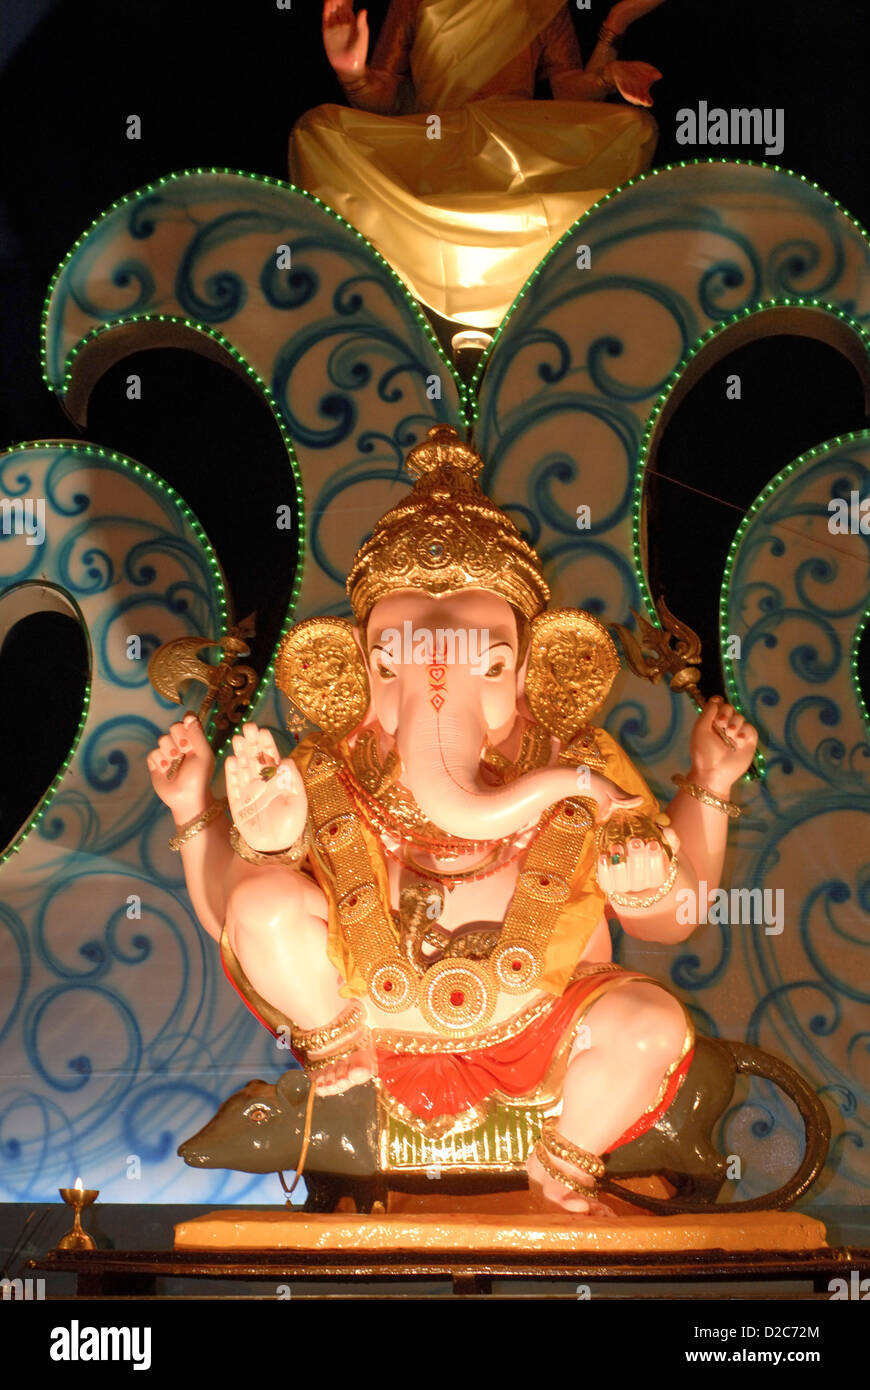 Idol Lord Ganesh sitzt auf seinem Fahrzeug Maus Elefant ging Gott Hindu für Ganapati Festival Talim Gurugi verehren; Dritte In Stockfoto